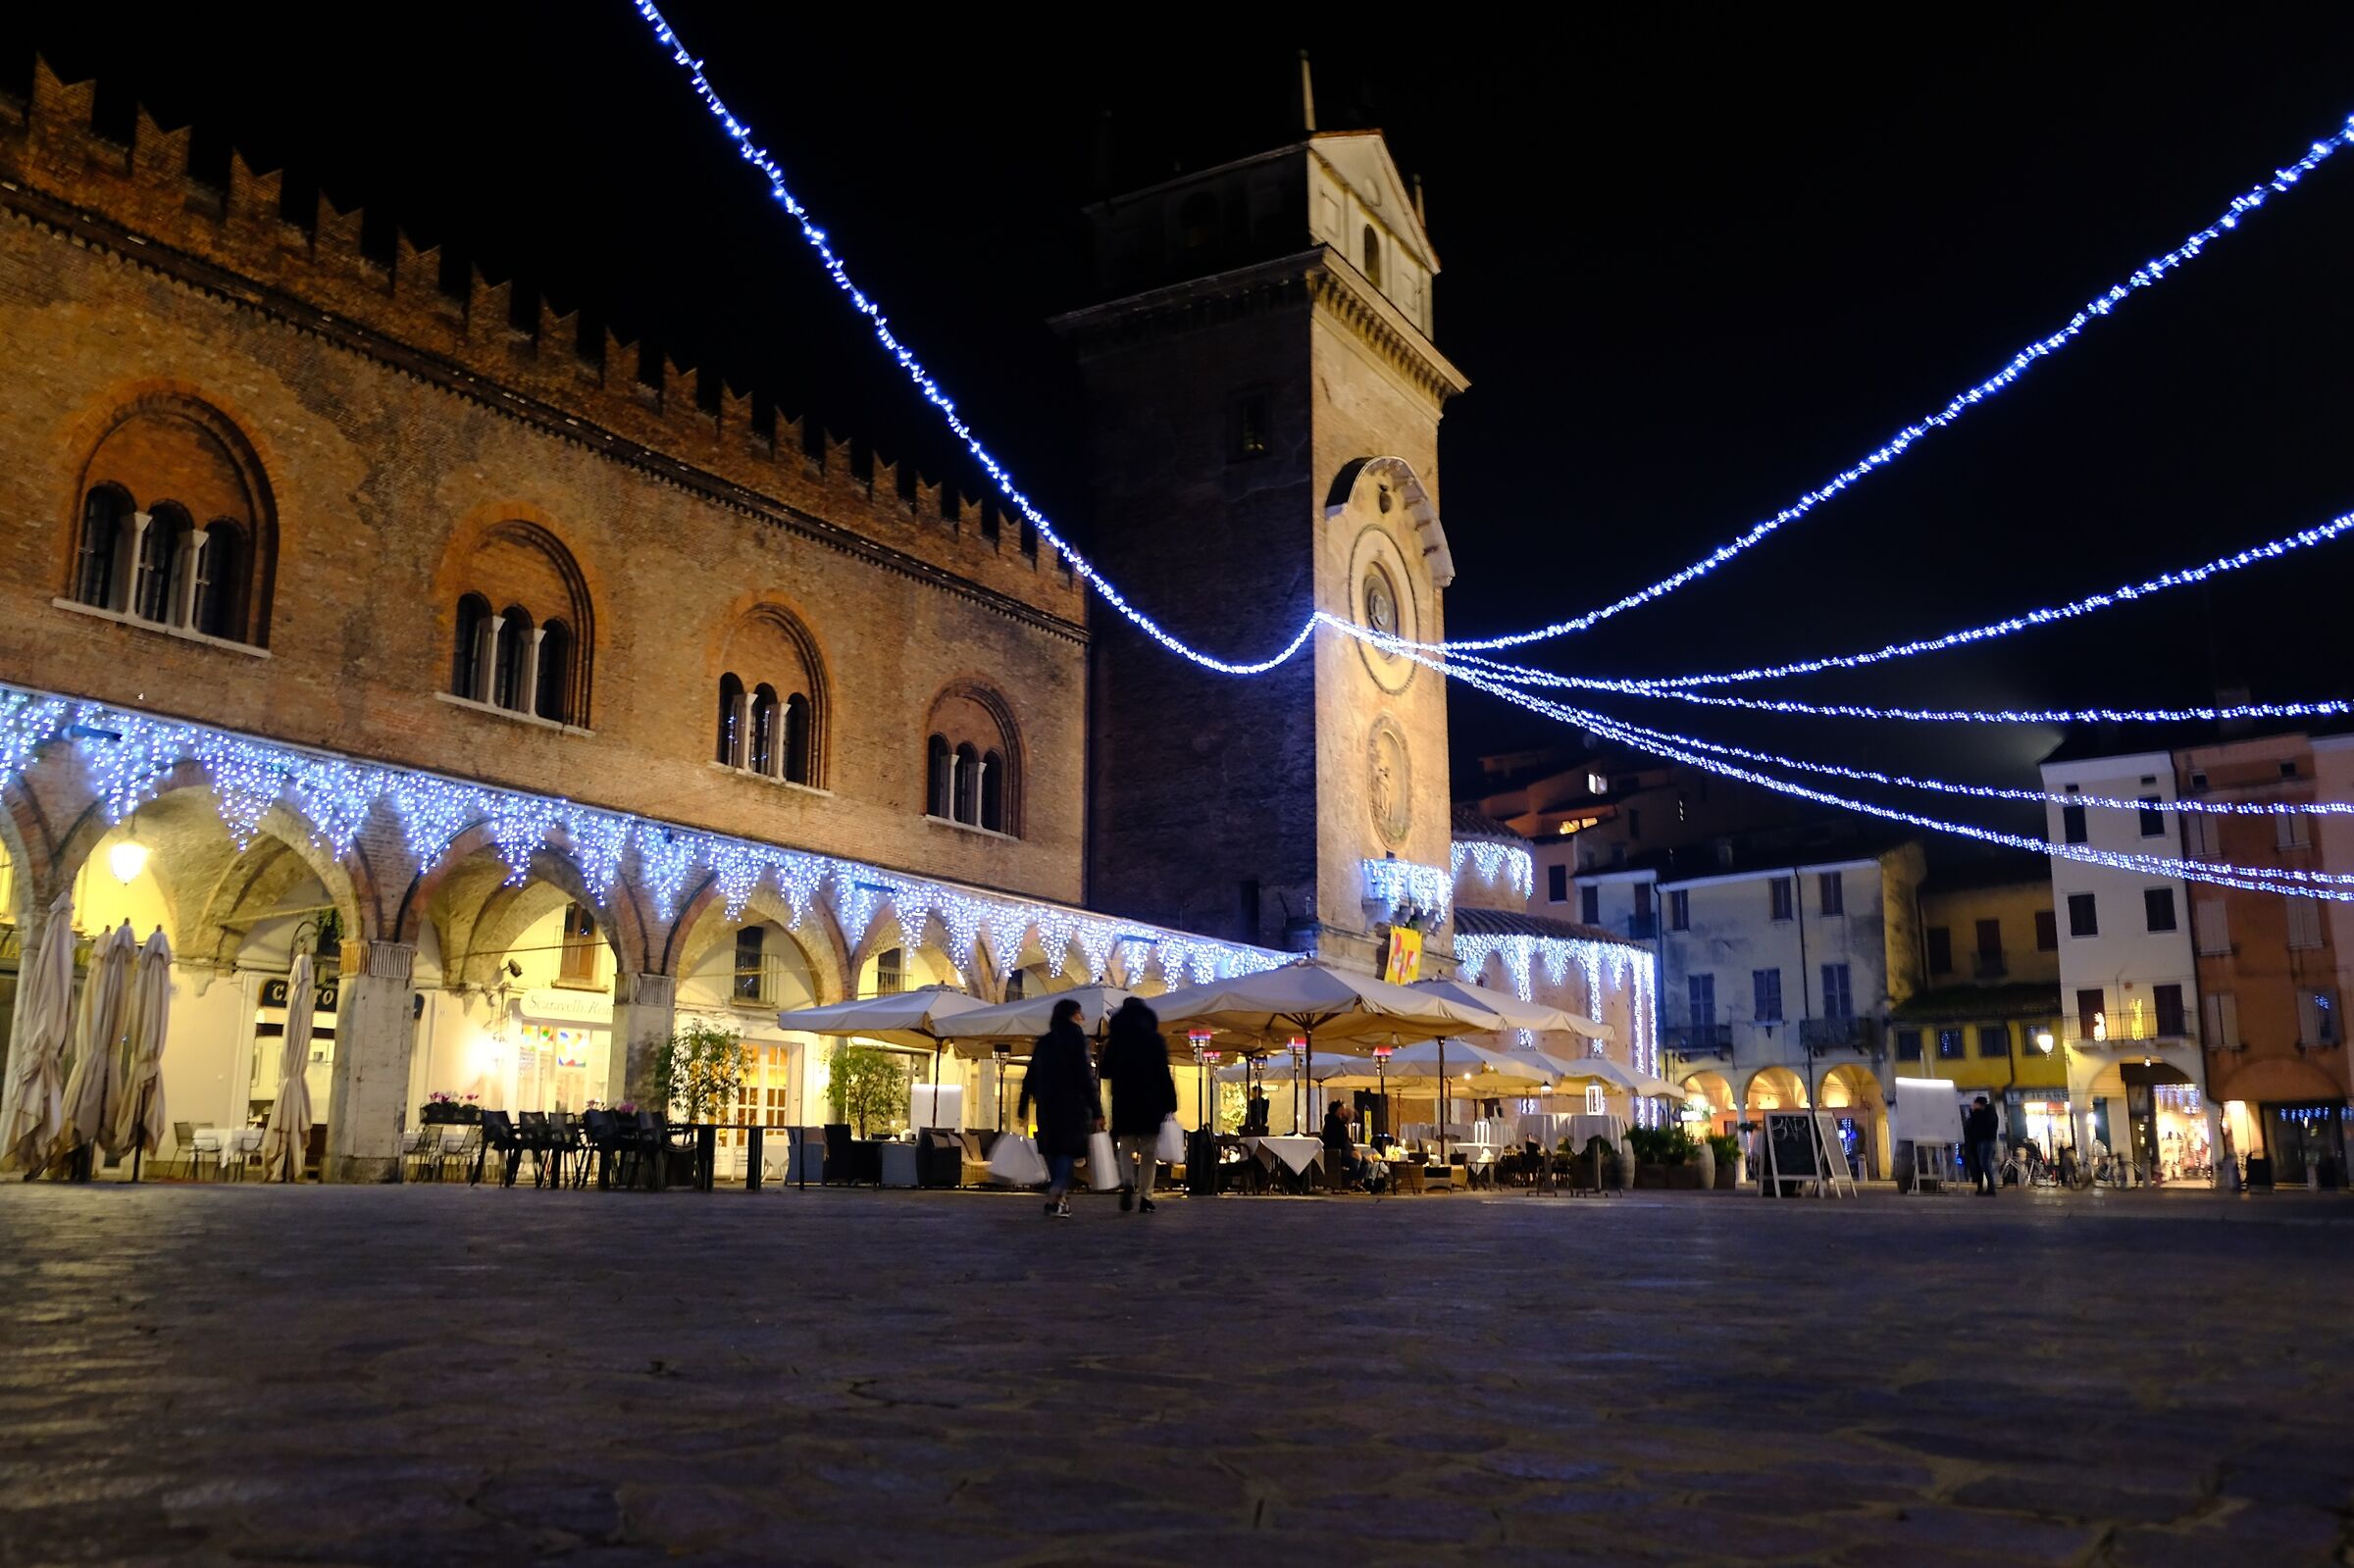 Shopping pre Natalizio in Piazza delle Erbe a Mantova...